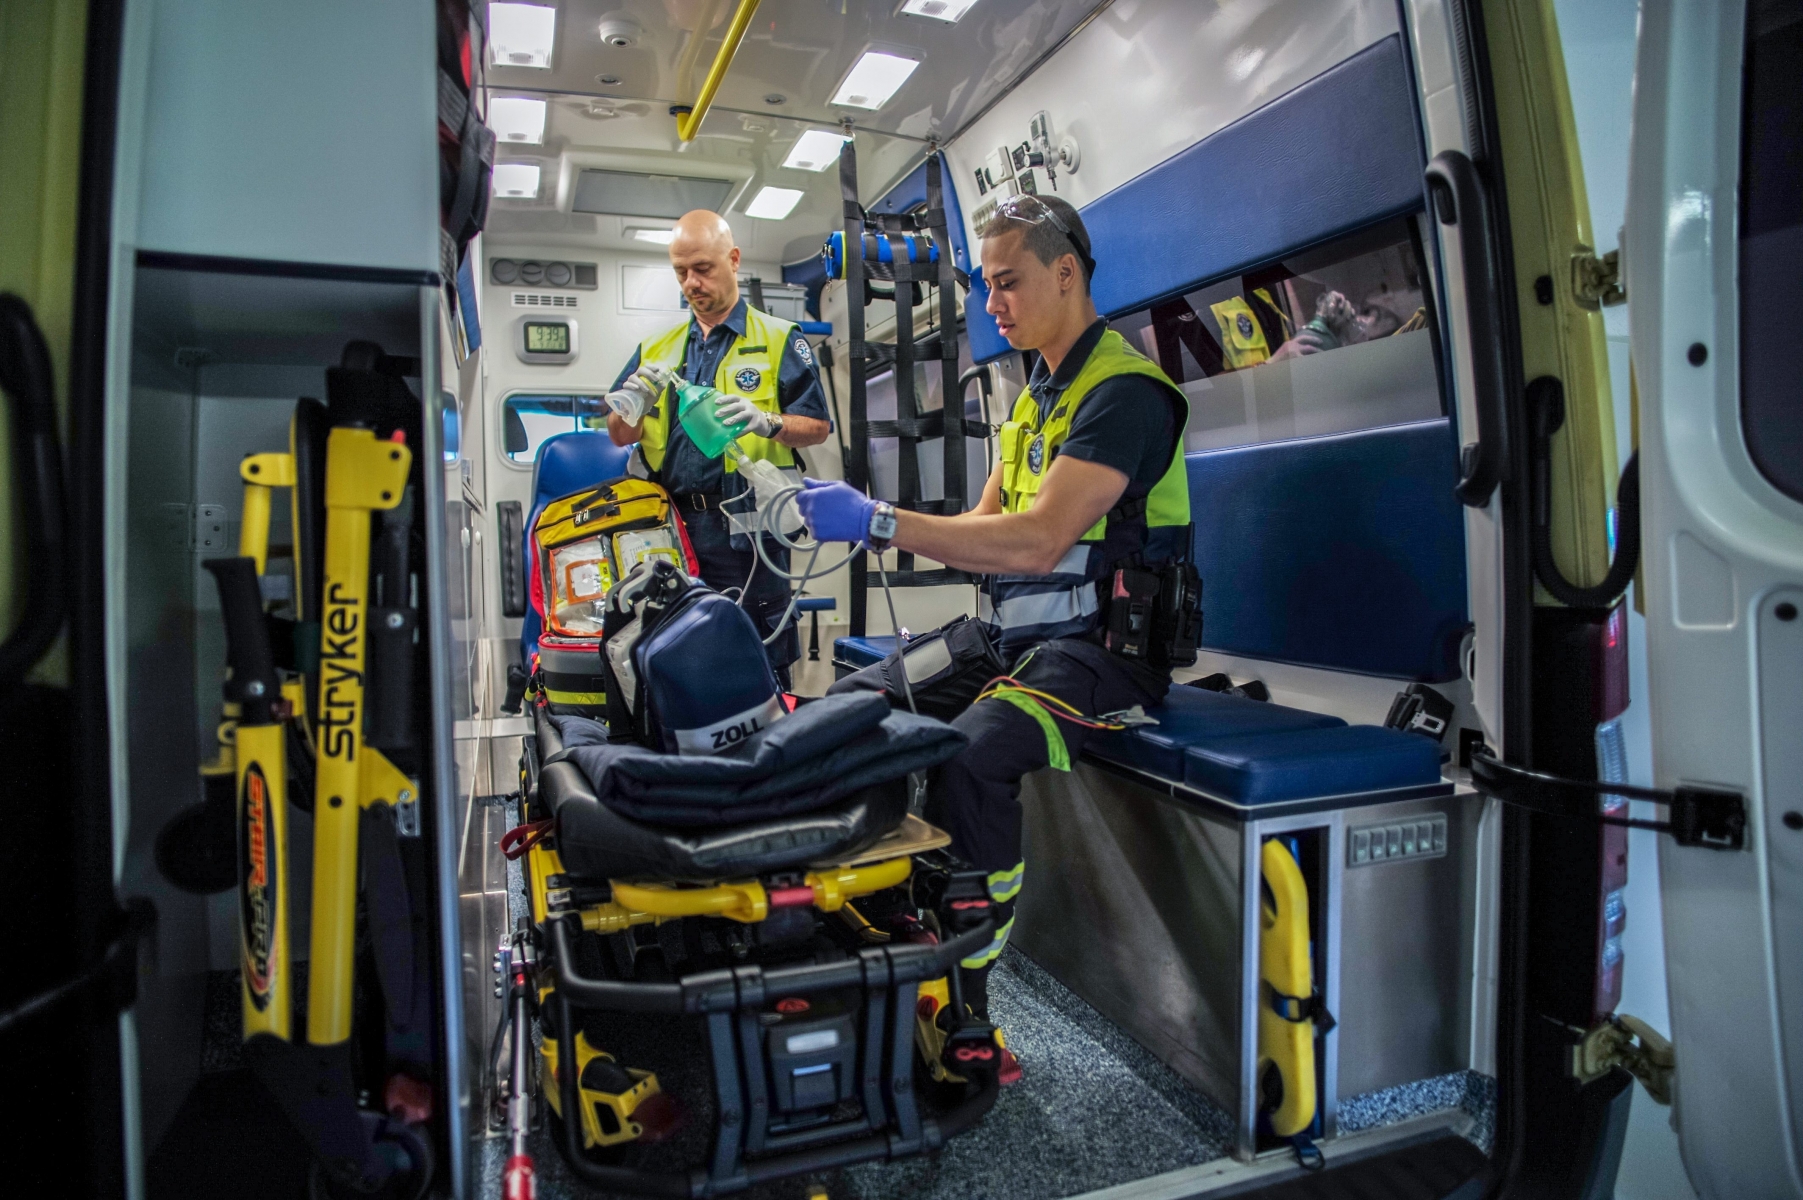 Ambulances Roland stationnees a La Chotte. Le directeur operationnel Yves Challande, ambulancier diplome, au fond



MALVILLIERS, 9.01.2014, PHOTO: CHRISTIAN GALLEY 144